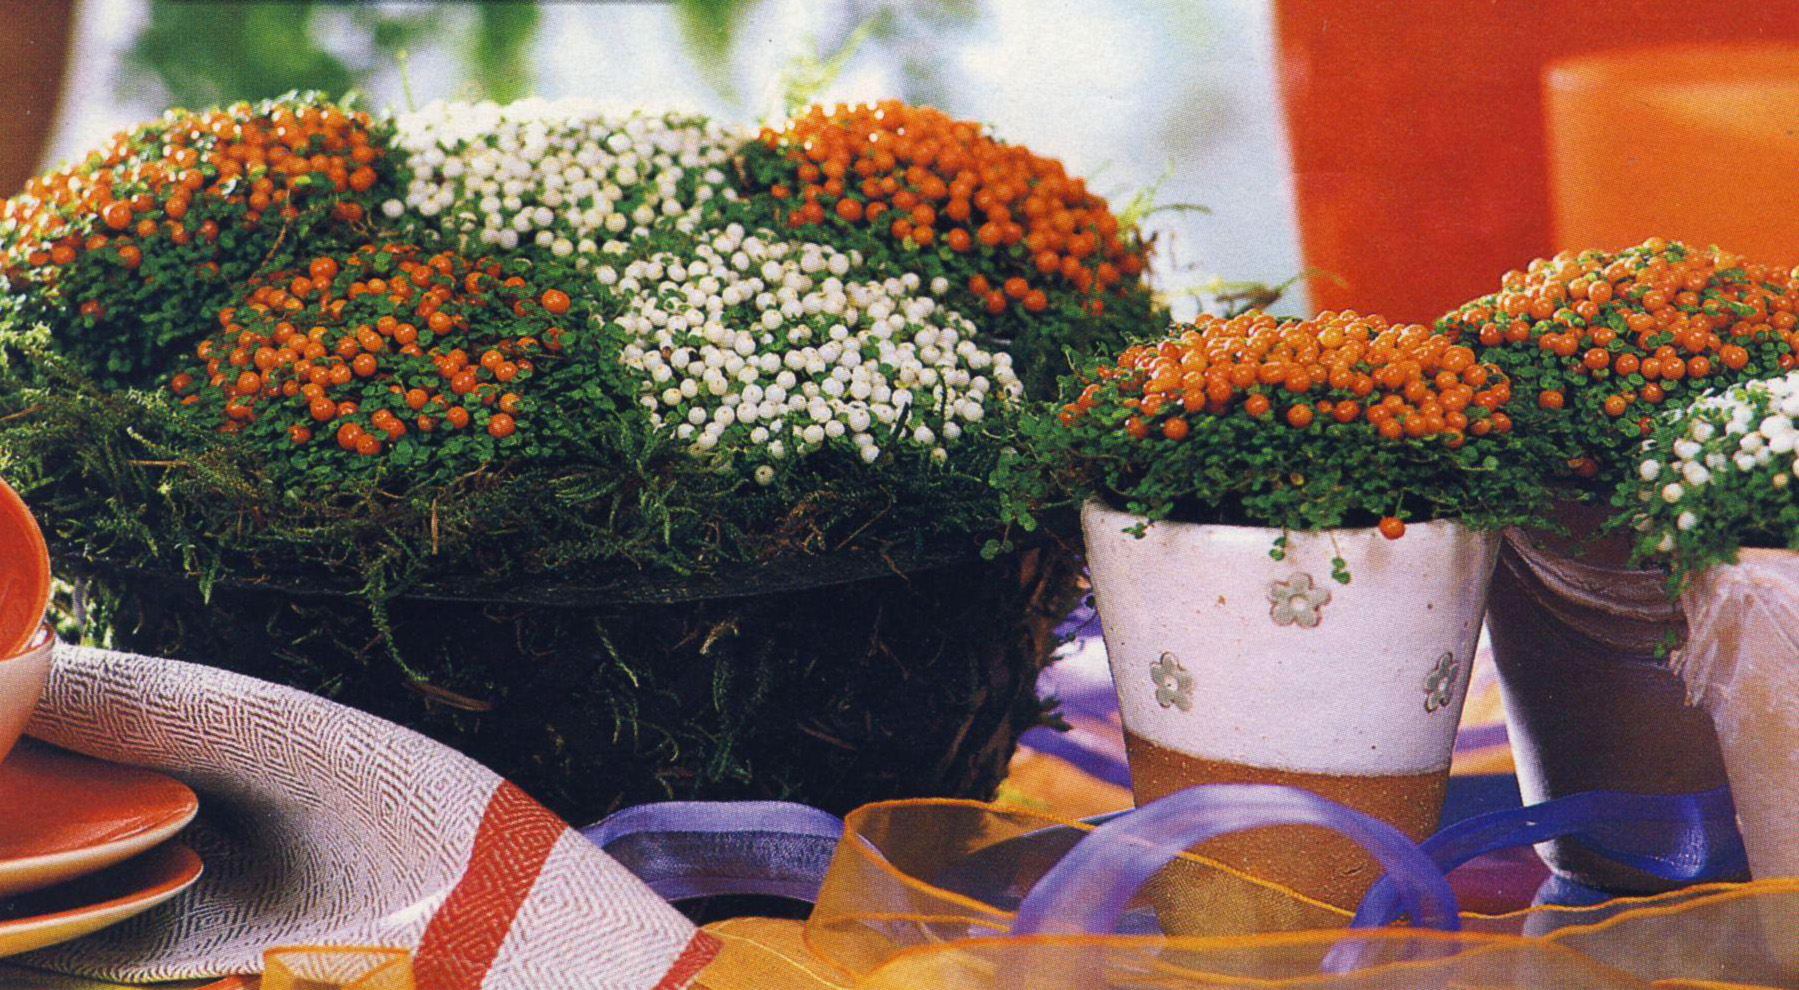 Цветок Комнатный С Оранжевыми Цветами Название Фото